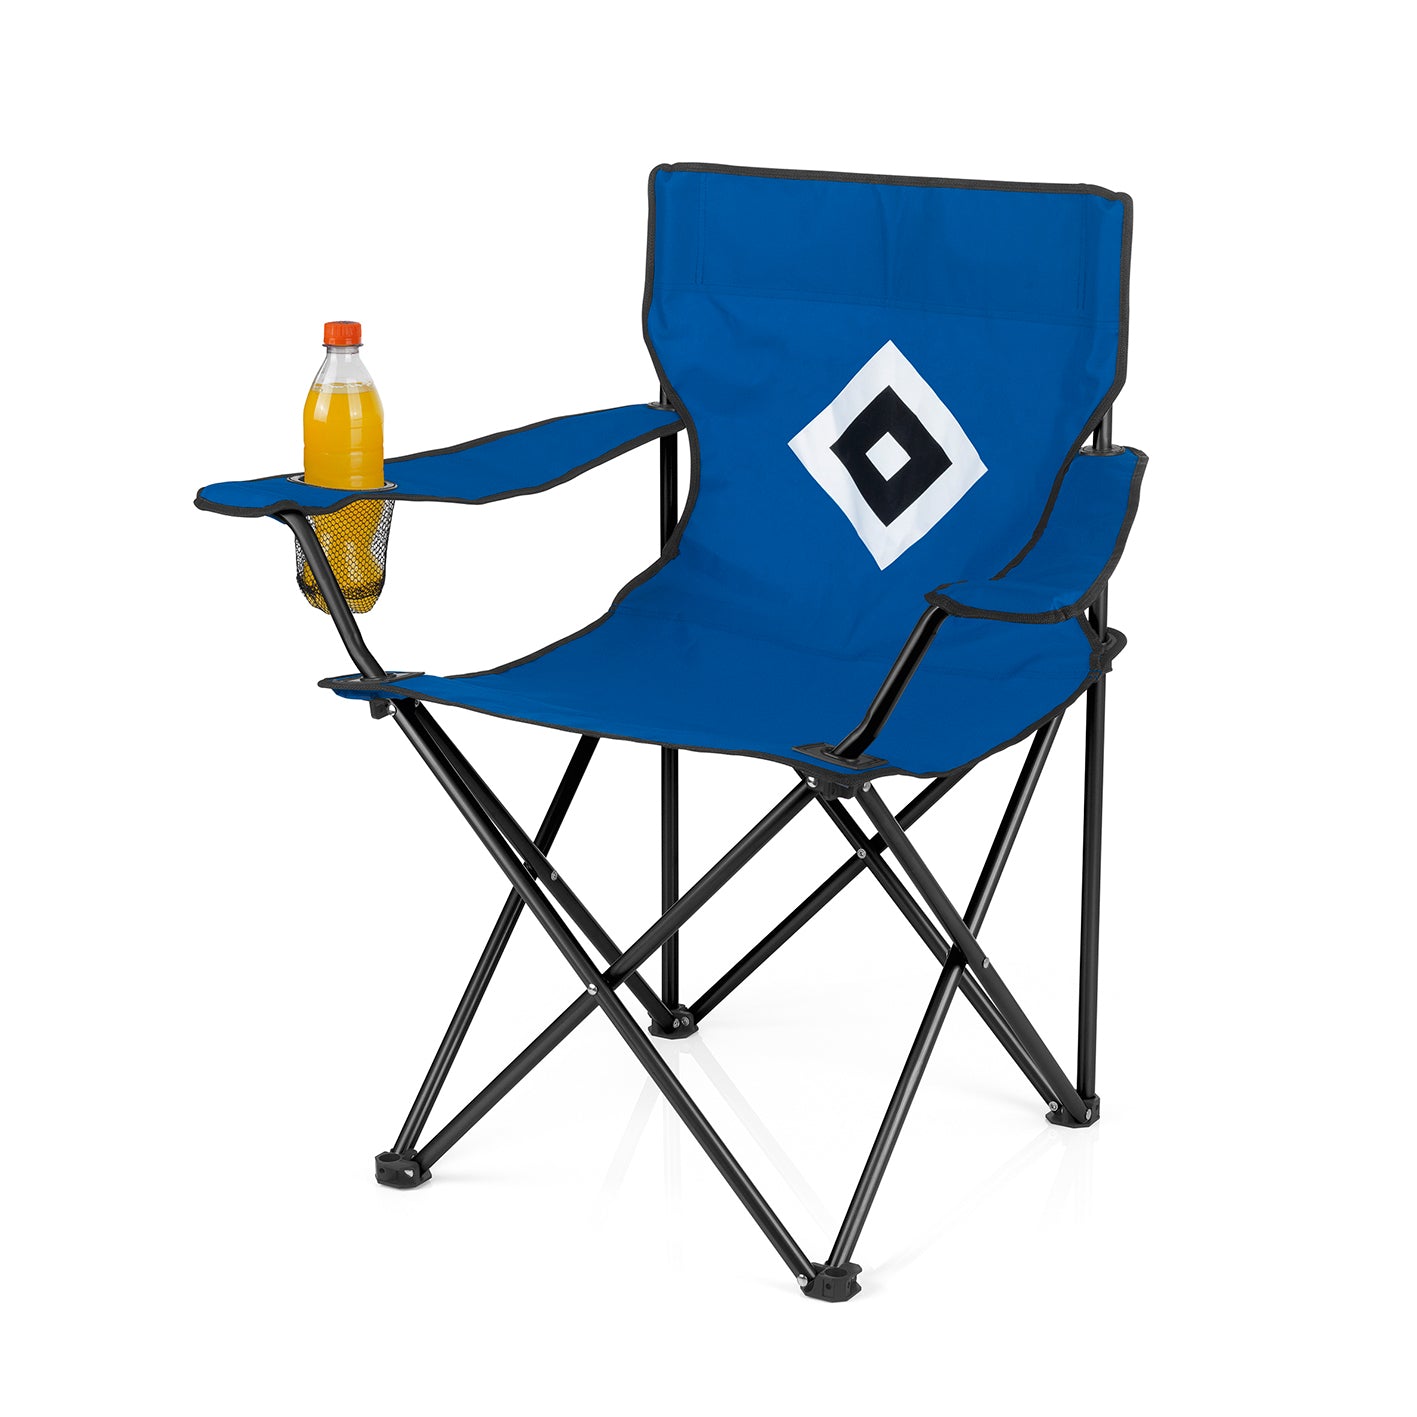 Campingstuhl faltbar mit Logo - 80x50 cm - blau